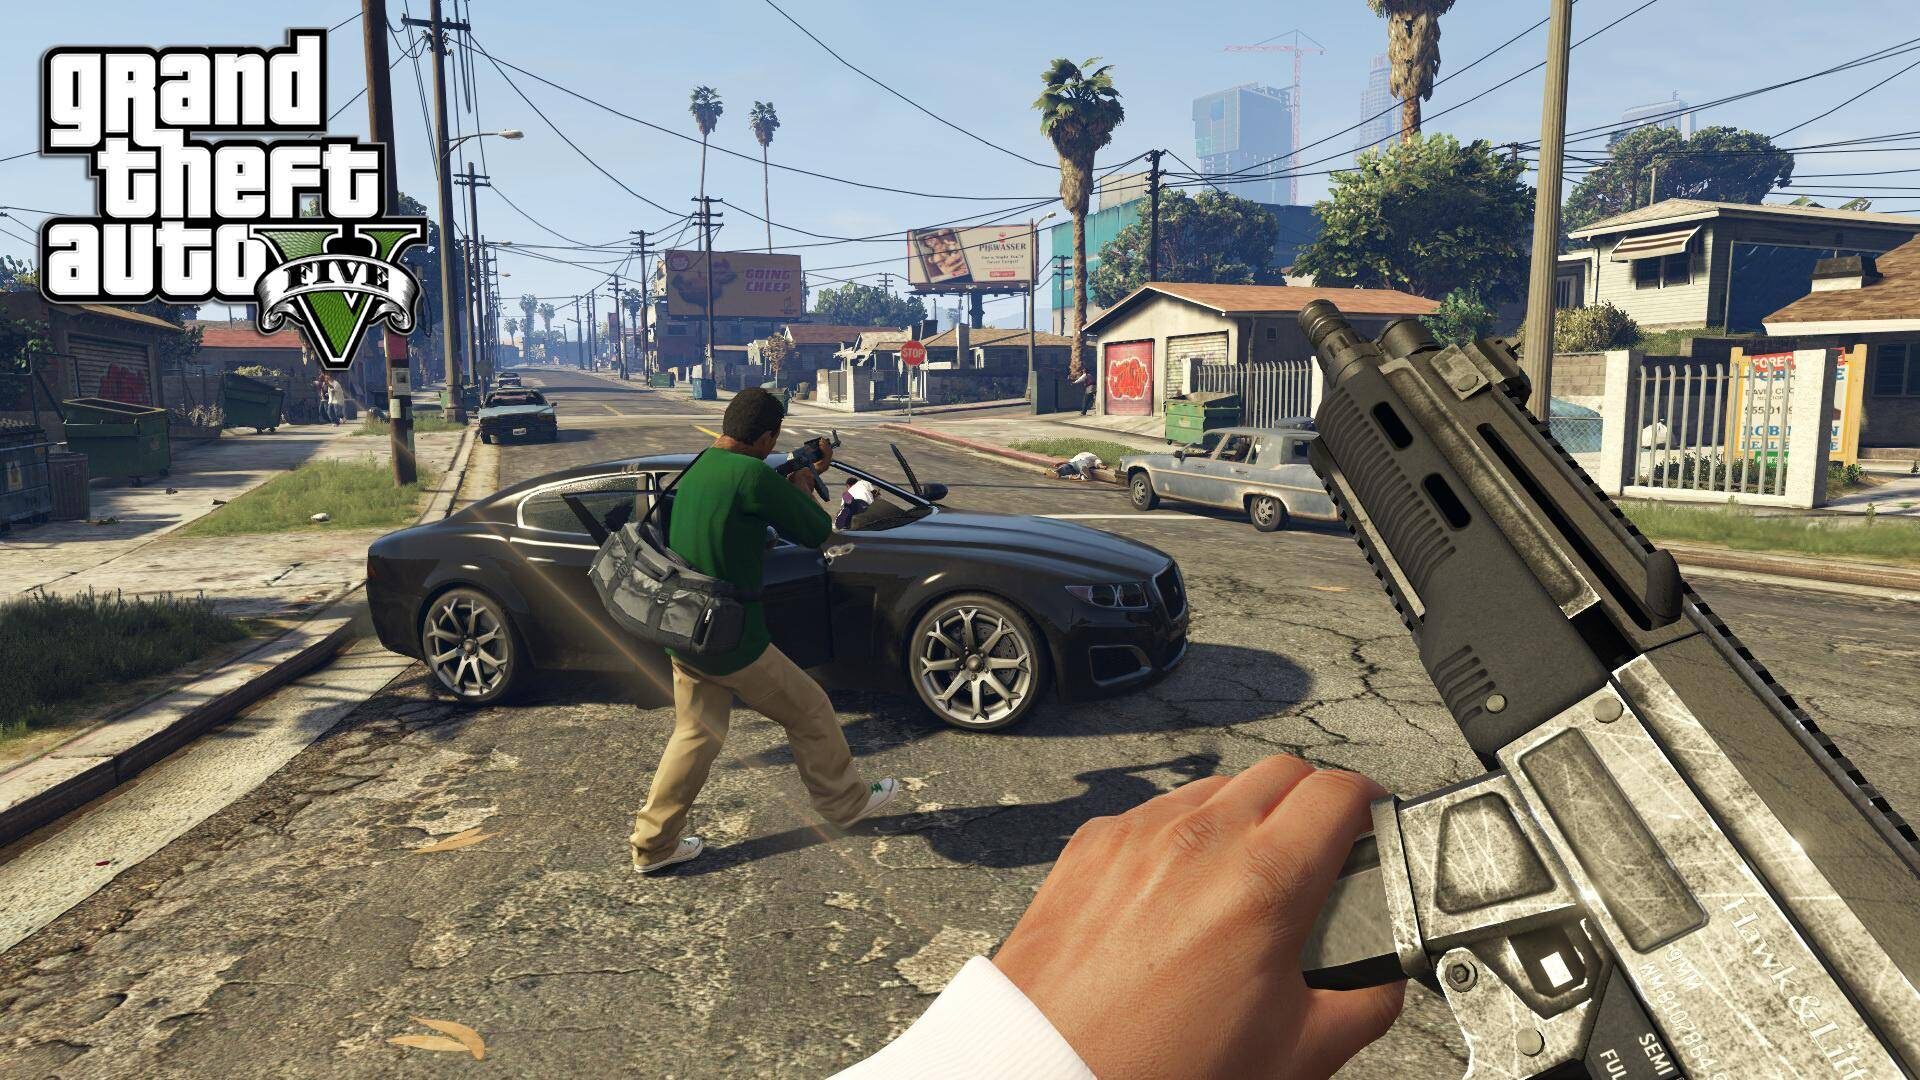 Grand Theft Auto V Gta 5 Premium Codigo 25 Digitos Global